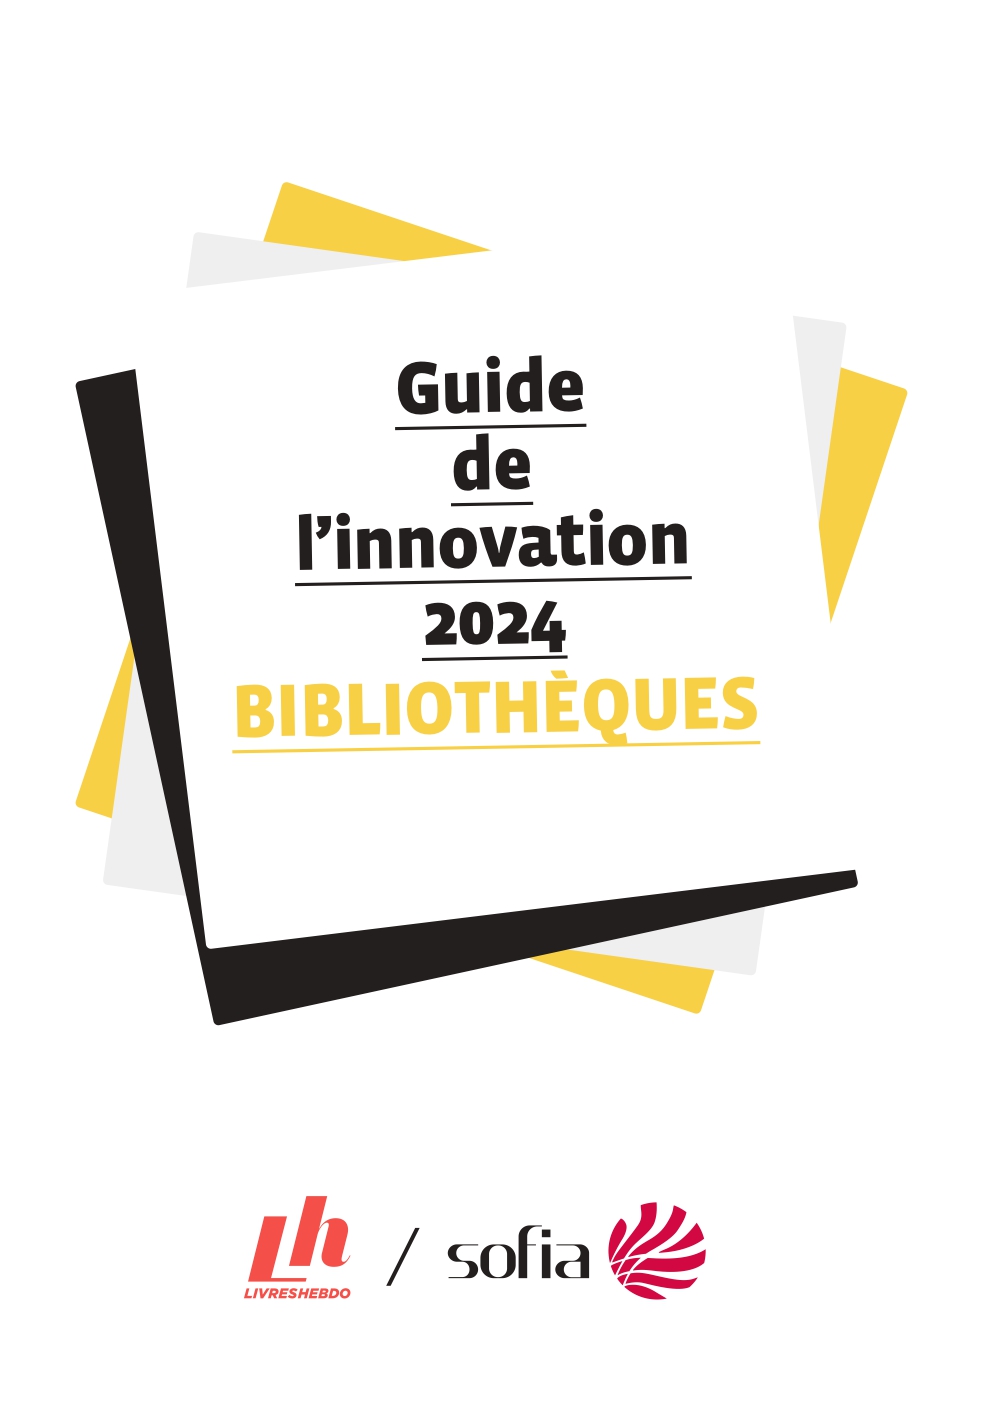 Guide de l'innovation 2024 des bibliothèques